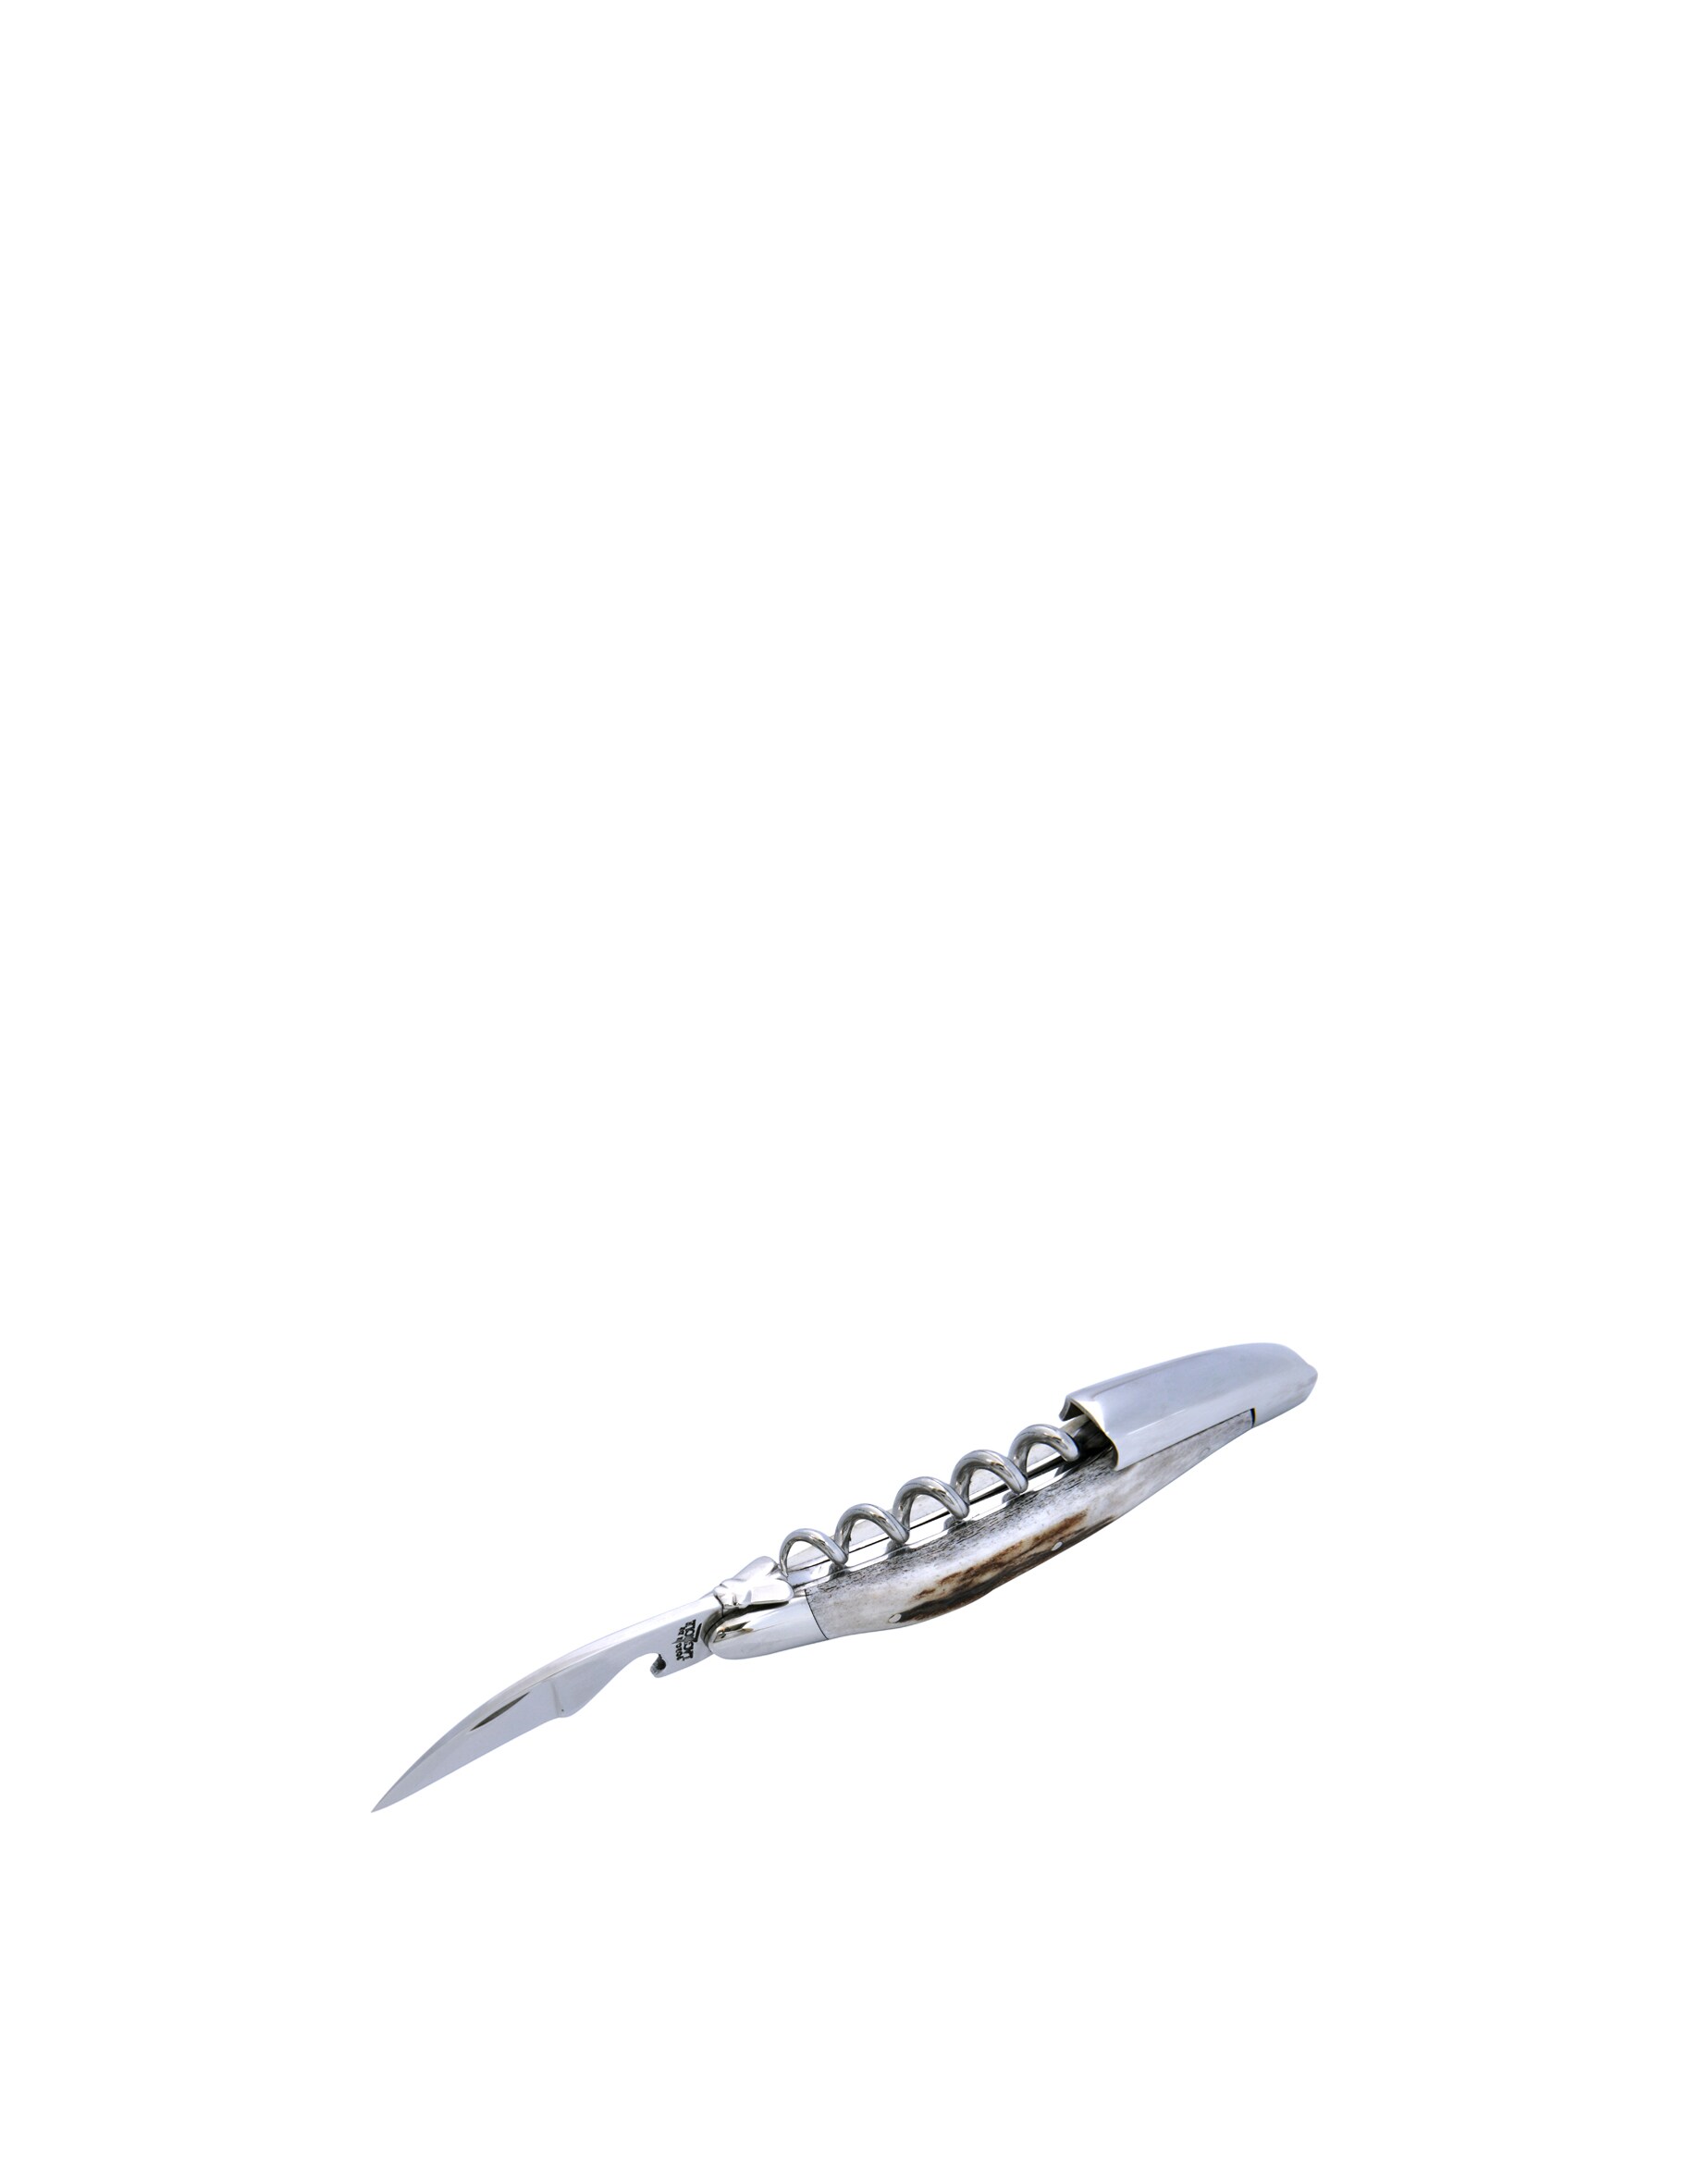 Нож сомелье с оленьими рогами, ручкой и кожаным чехлом Forge De Laguiole сабля en aubrac sabre сhampagne olivier для сабража 40 см cms99oli hzb1 forge de laguiole